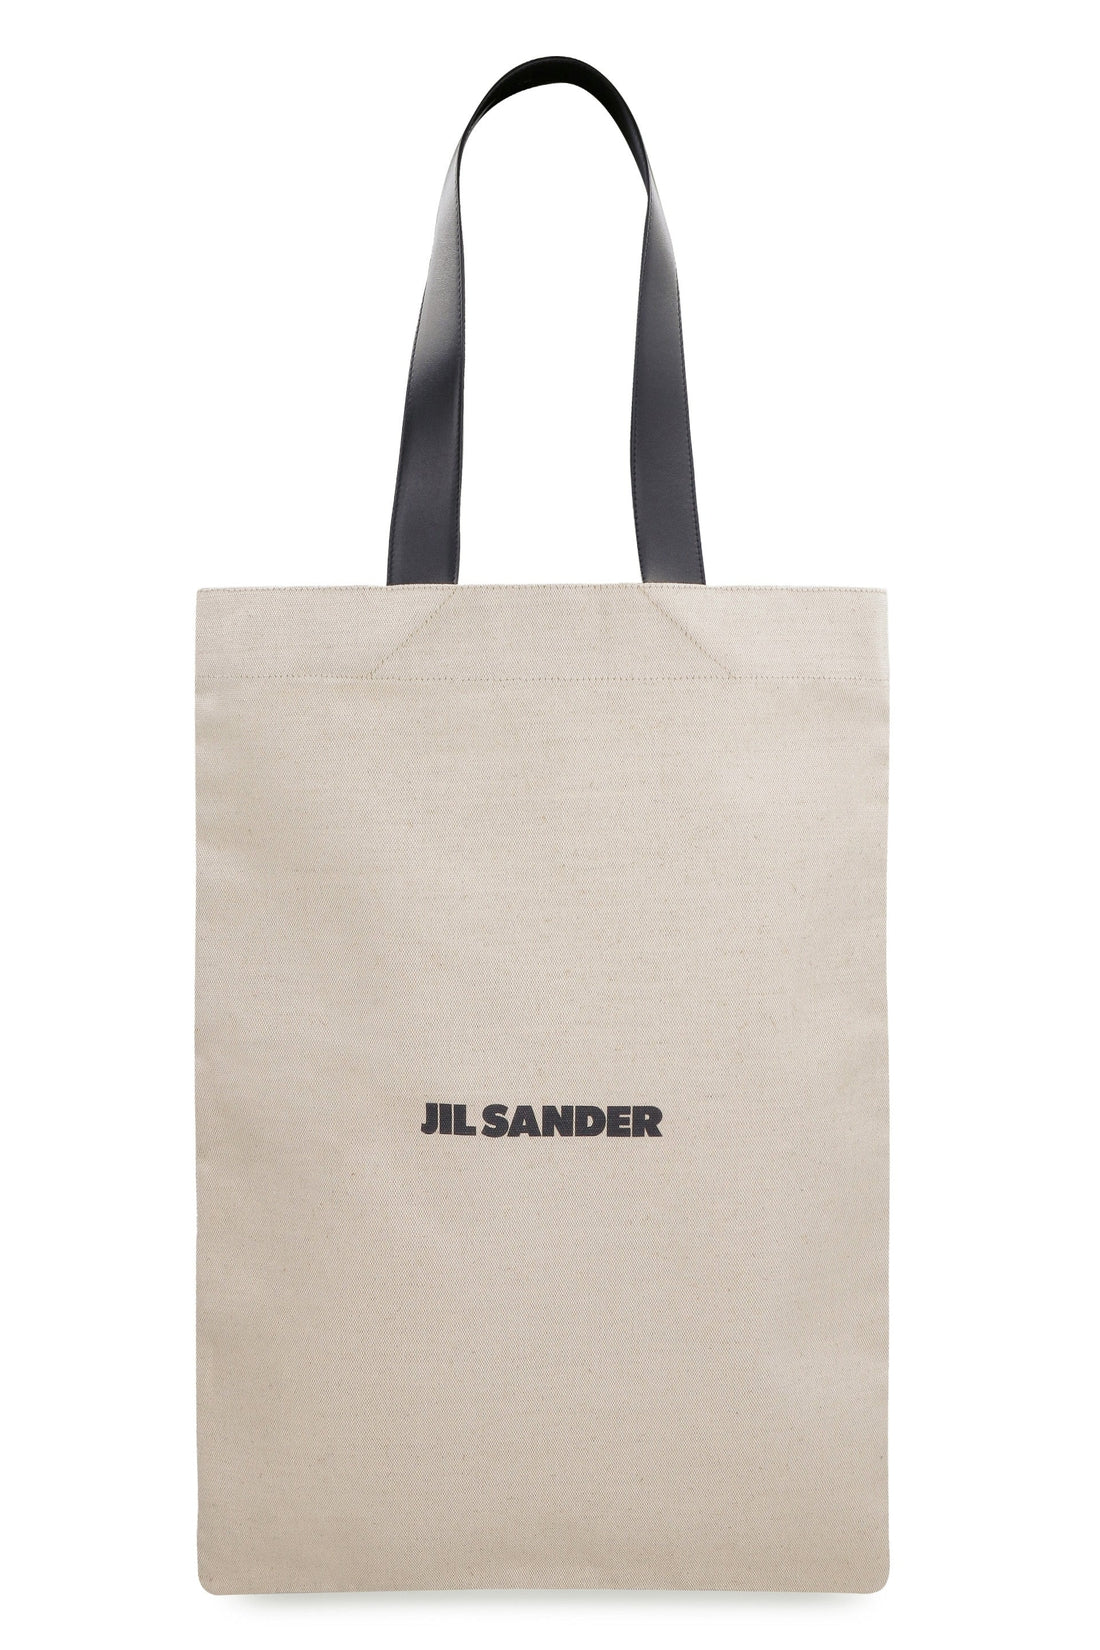 Jil Sander-OUTLET-SALE-Canvas tote bag-ARCHIVIST